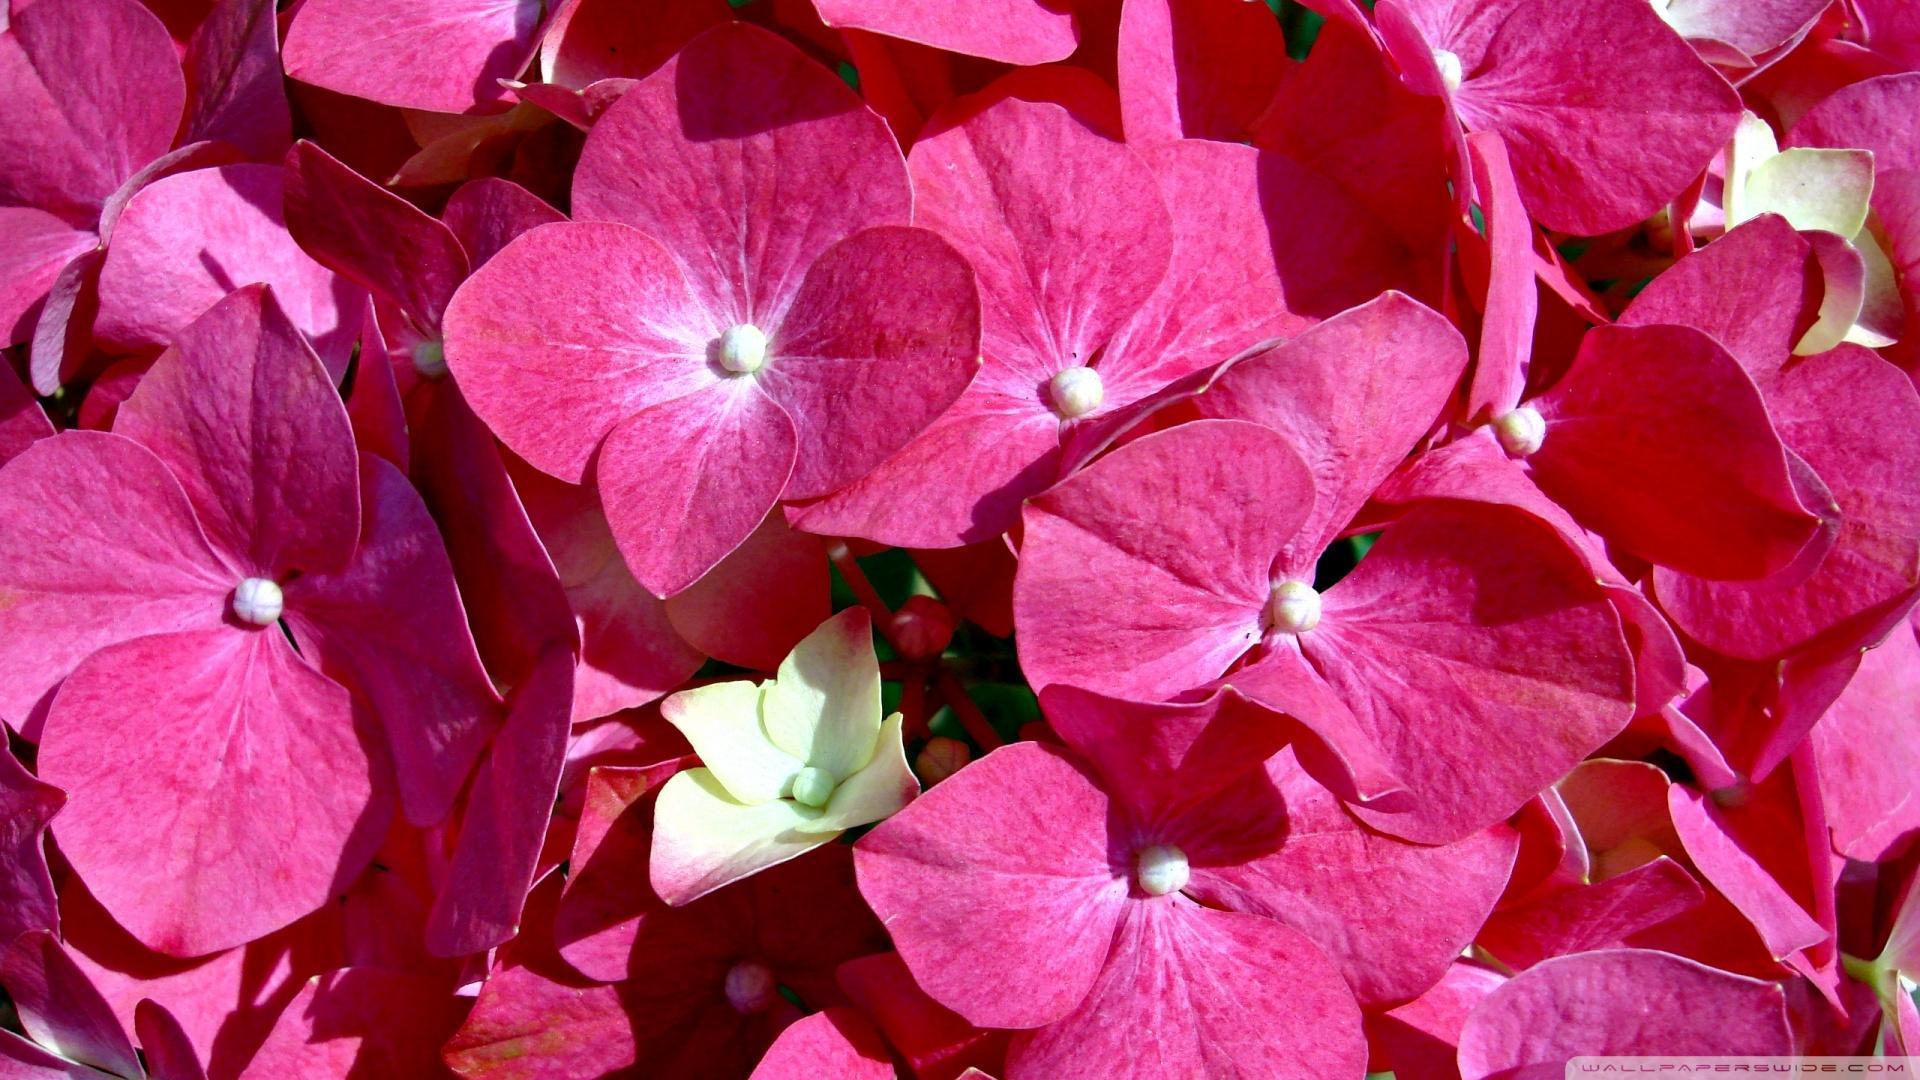 Pink Flowers HD desktop wallpaper, Widescreen, High Definition